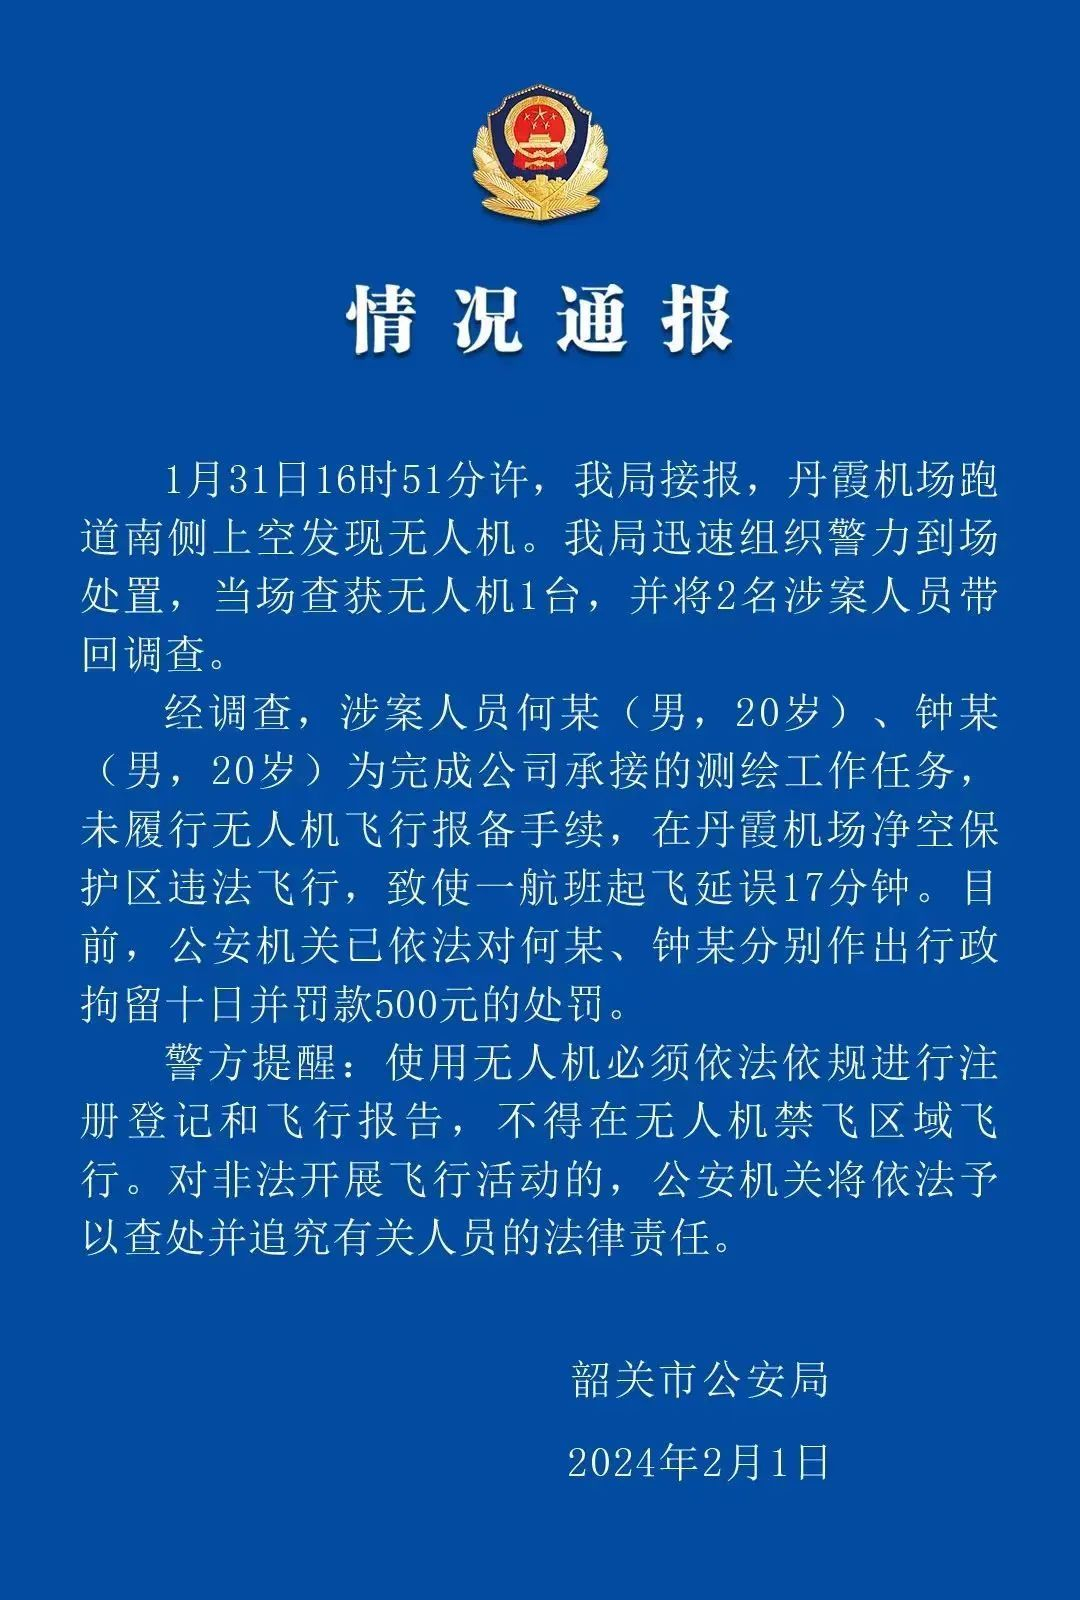 广东警方通报无人机黑飞致航班延误